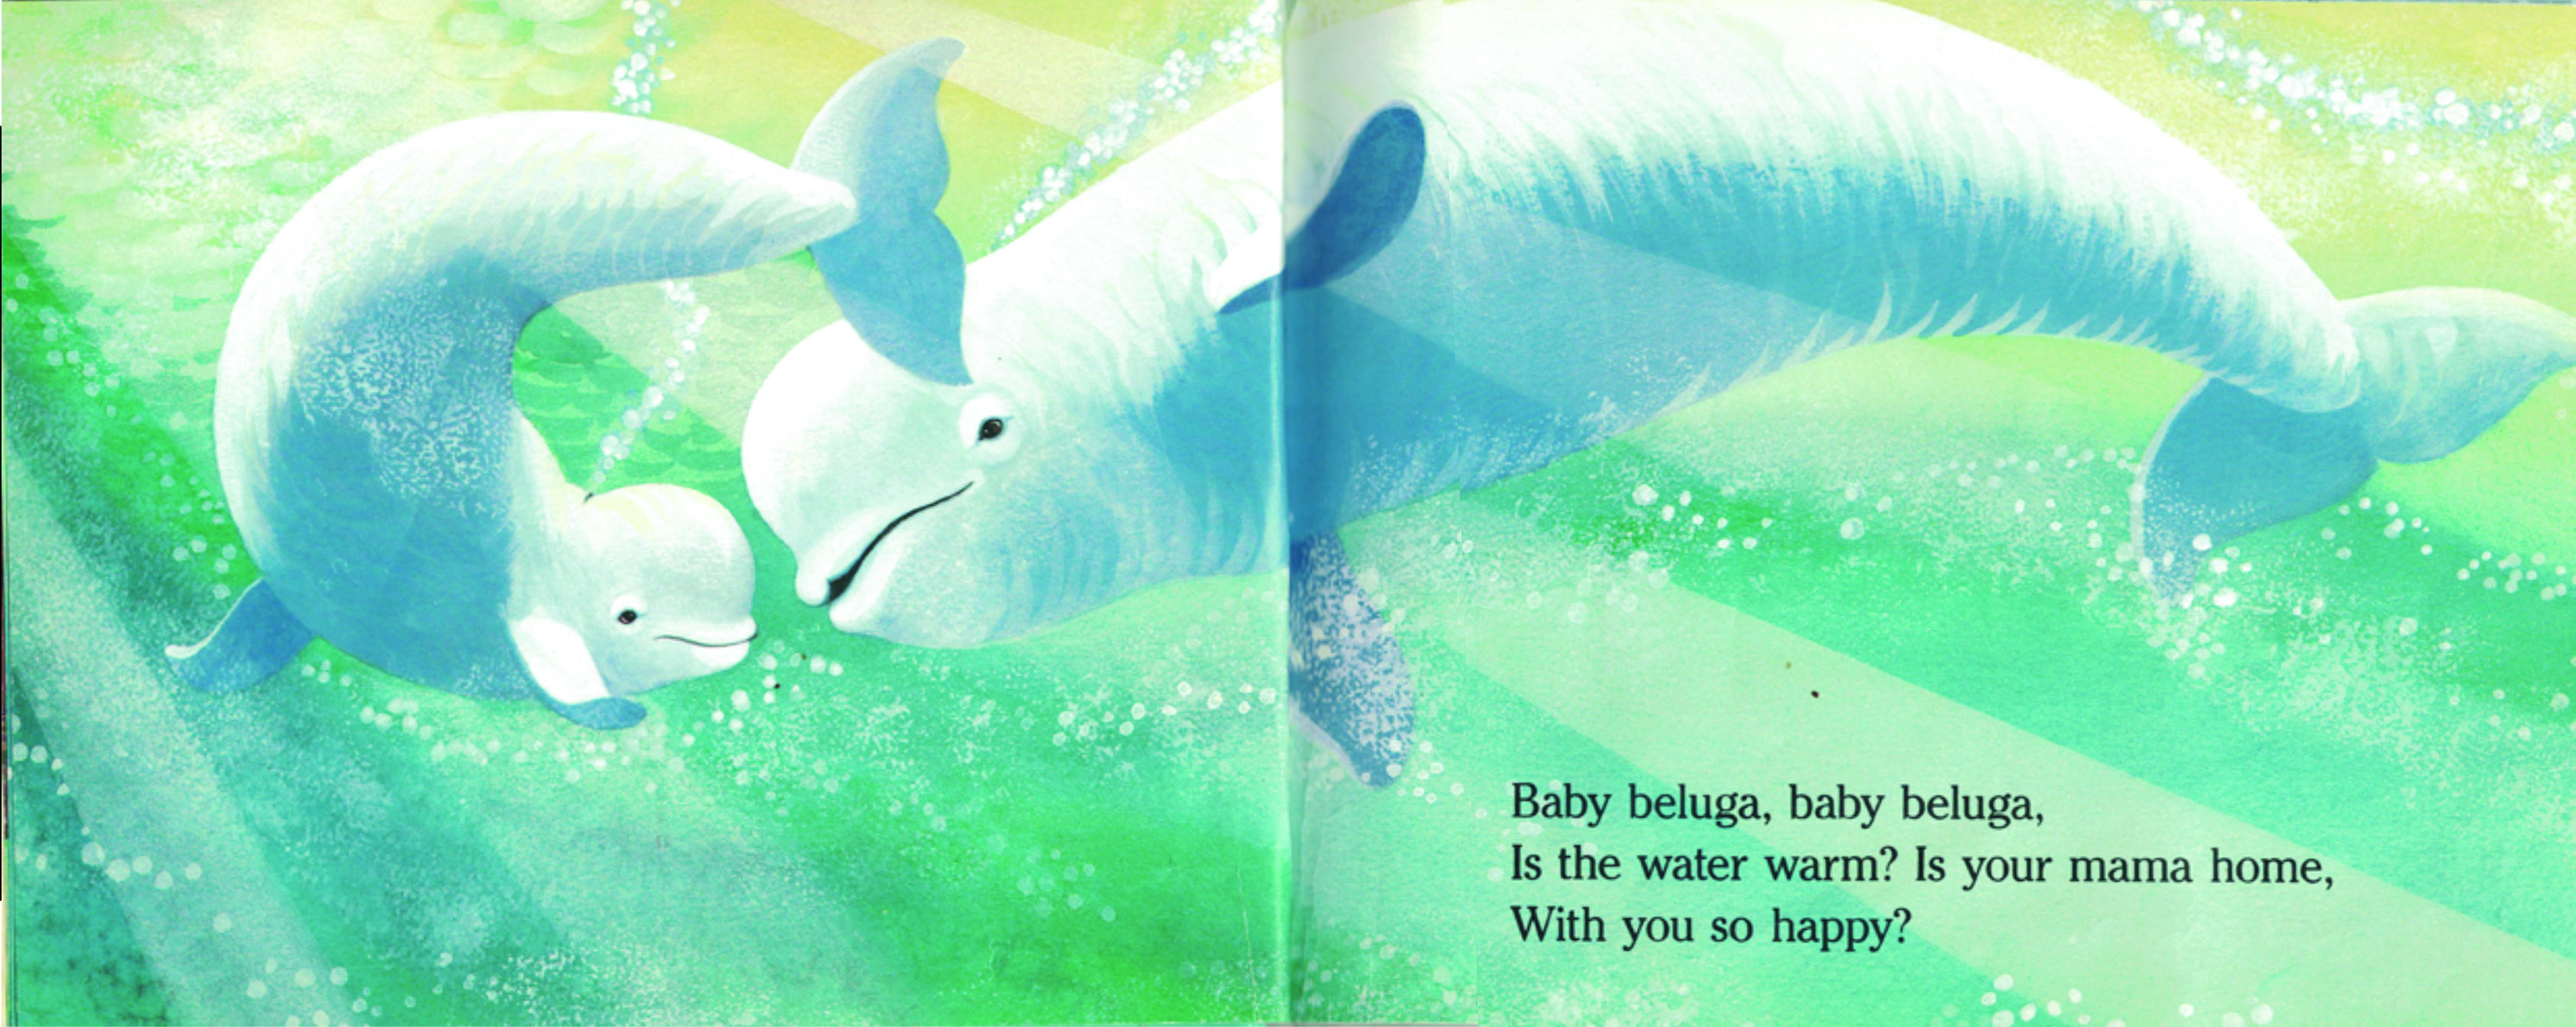 baby-beluga-interior